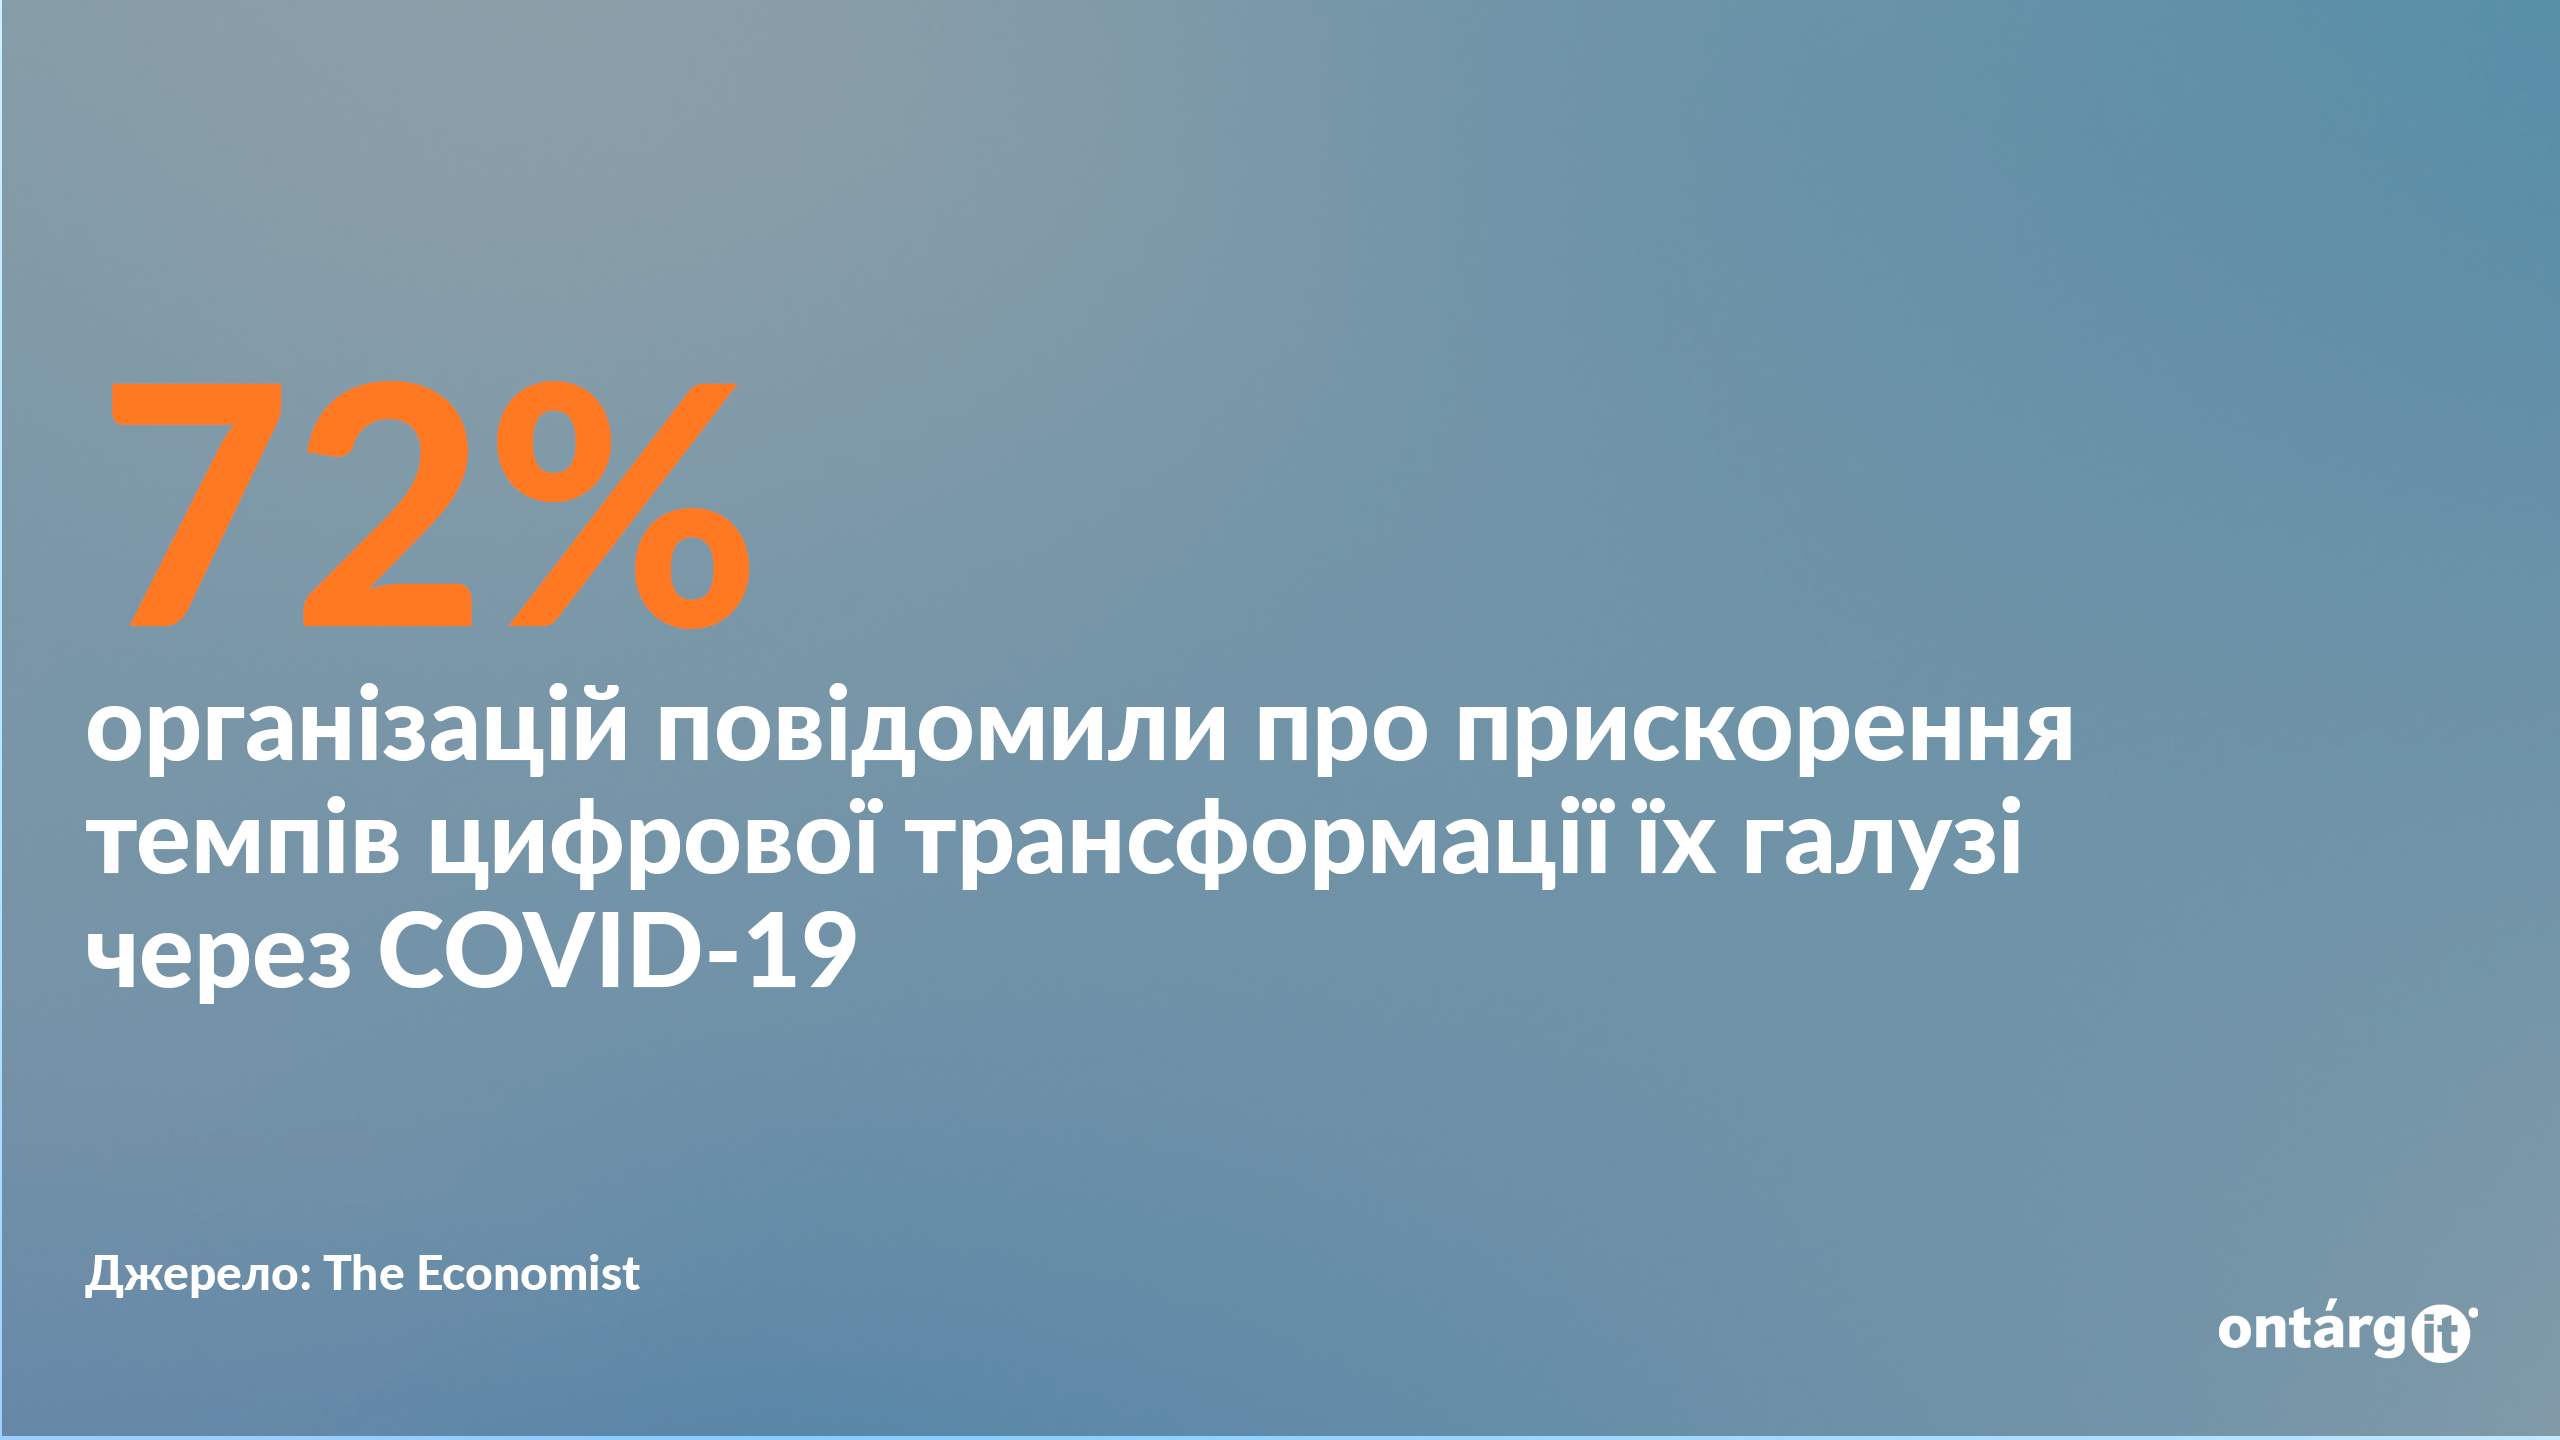 72% організацій повідомили про прискорення темпів цифрової трансформації їх галузі через COVID-19.